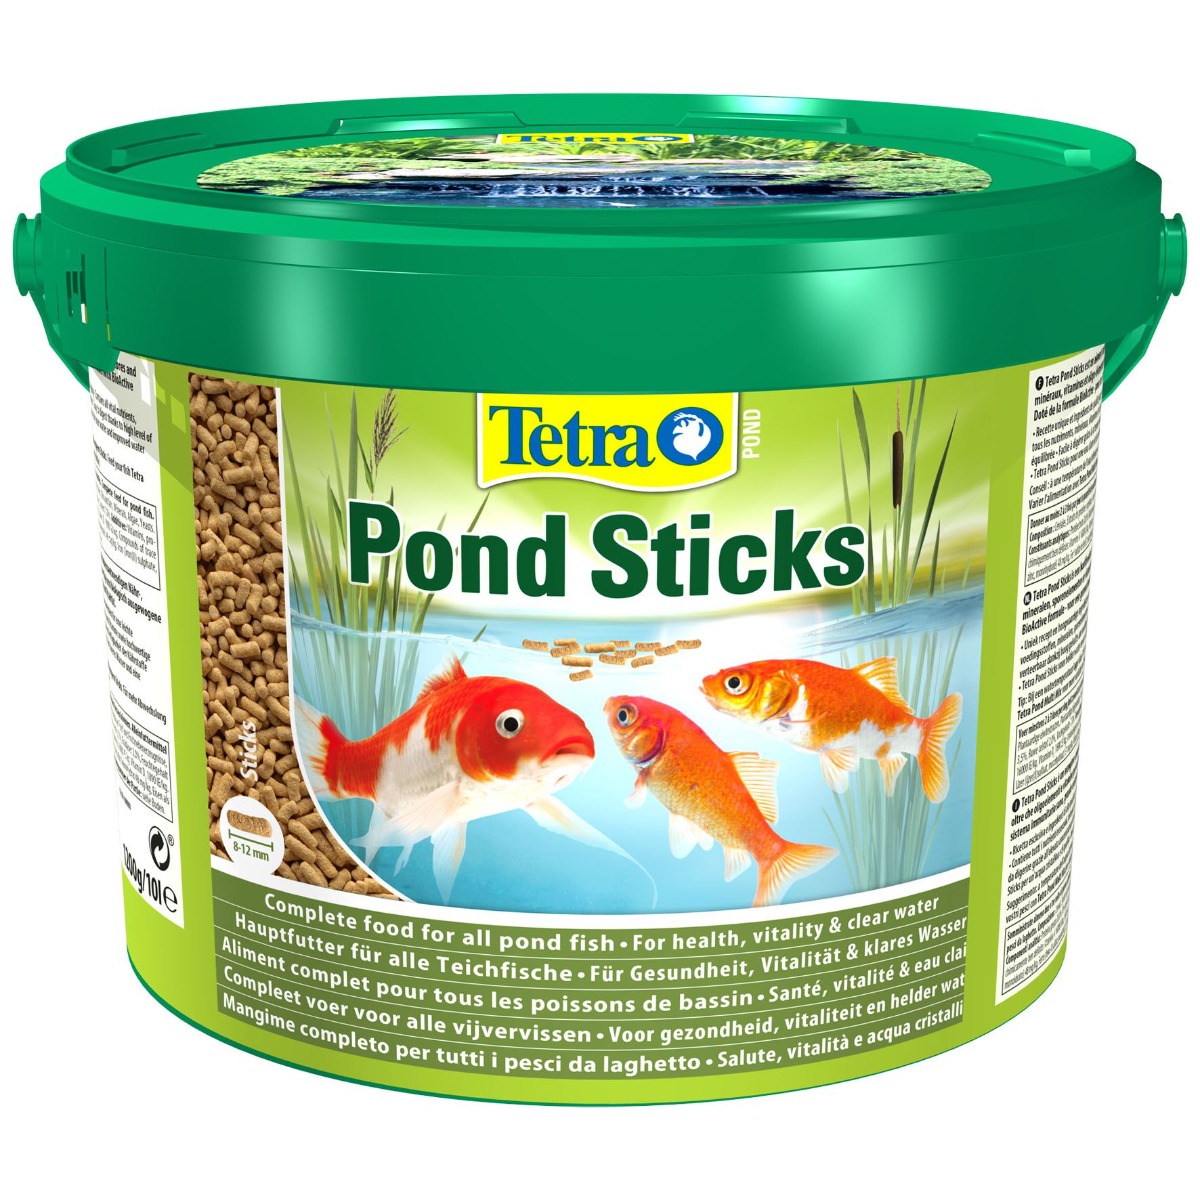 Tetra Cichlid XL Flakes pur tous les Cichlidés et autres poissons  d'ornement au meilleur prix sur